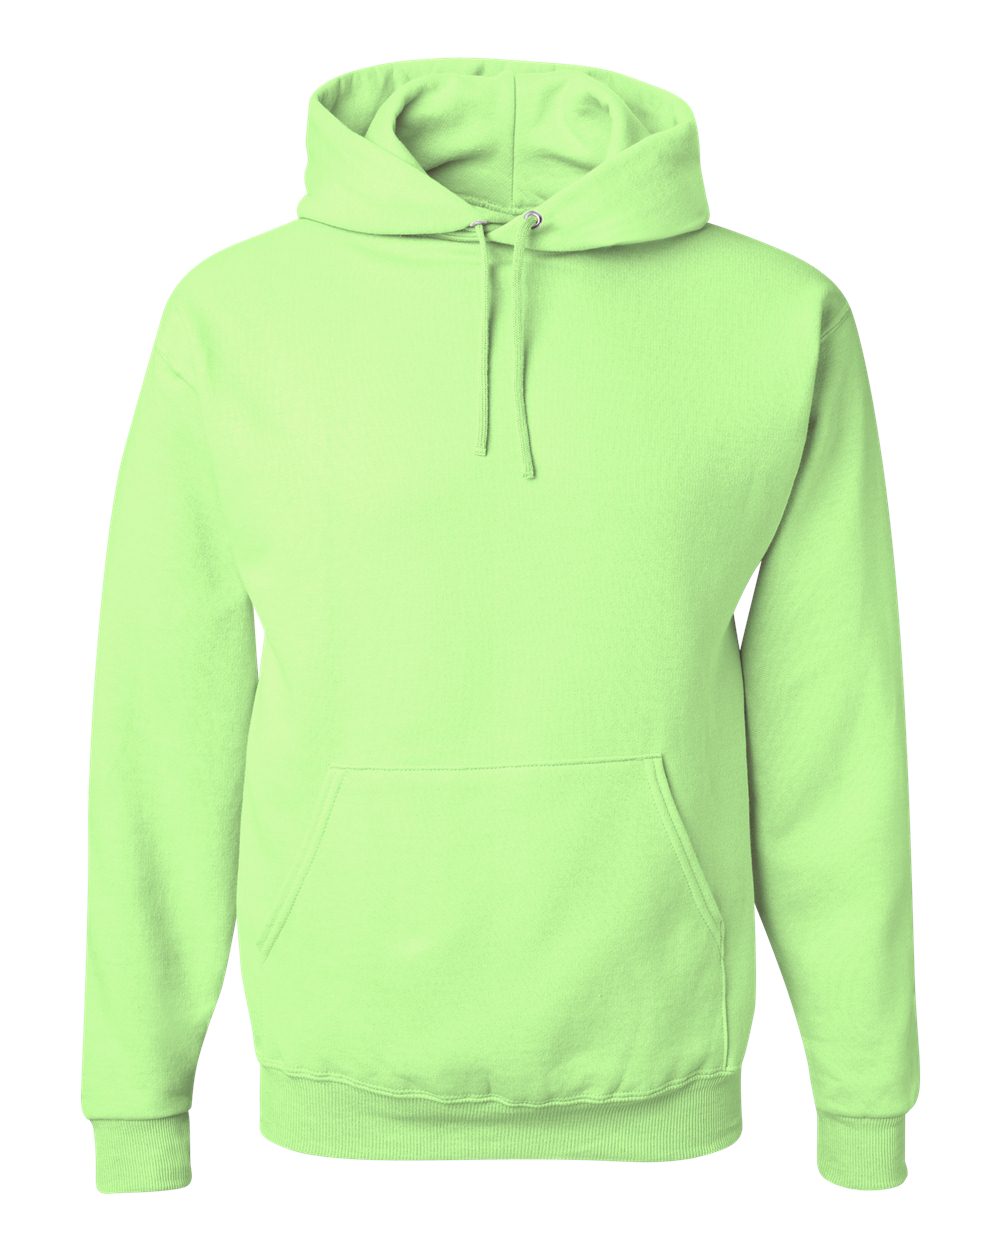 JERZEES - NuBlend® Hooded Sweatshirt - 996MR. S - 5XL